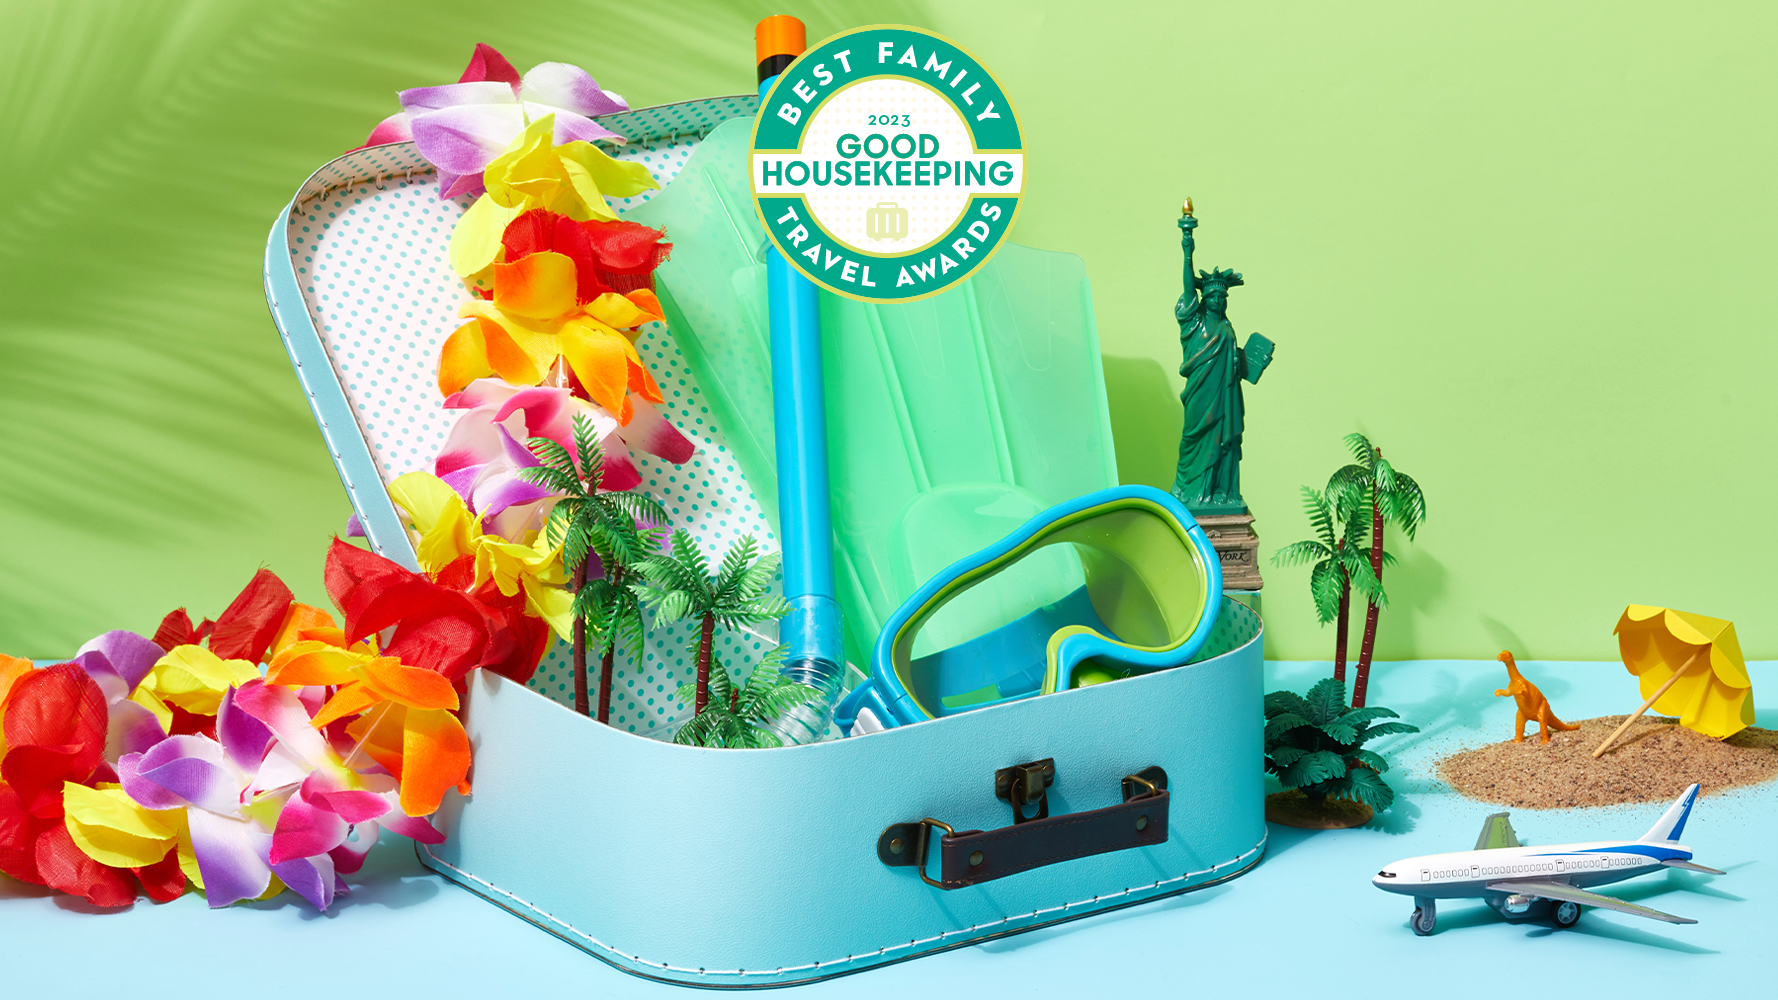 Good Housekeeping Travel Awards